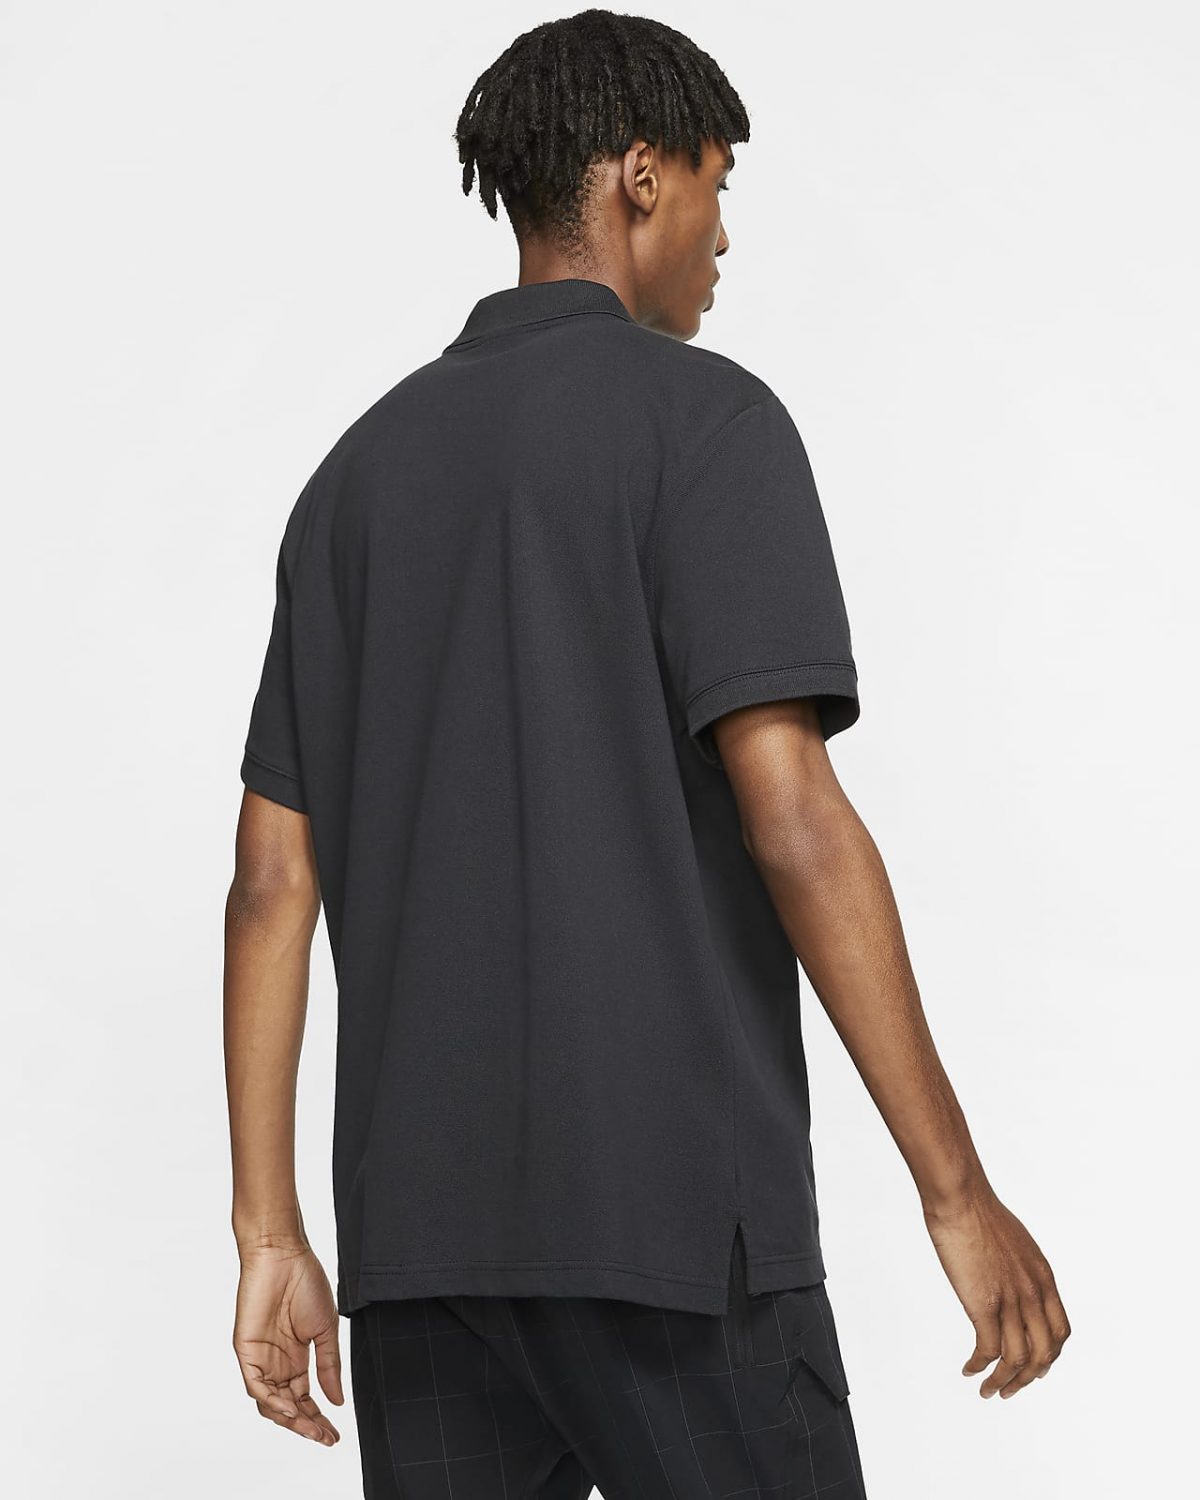 Мужская футболка Nike Sportswear черная фотография